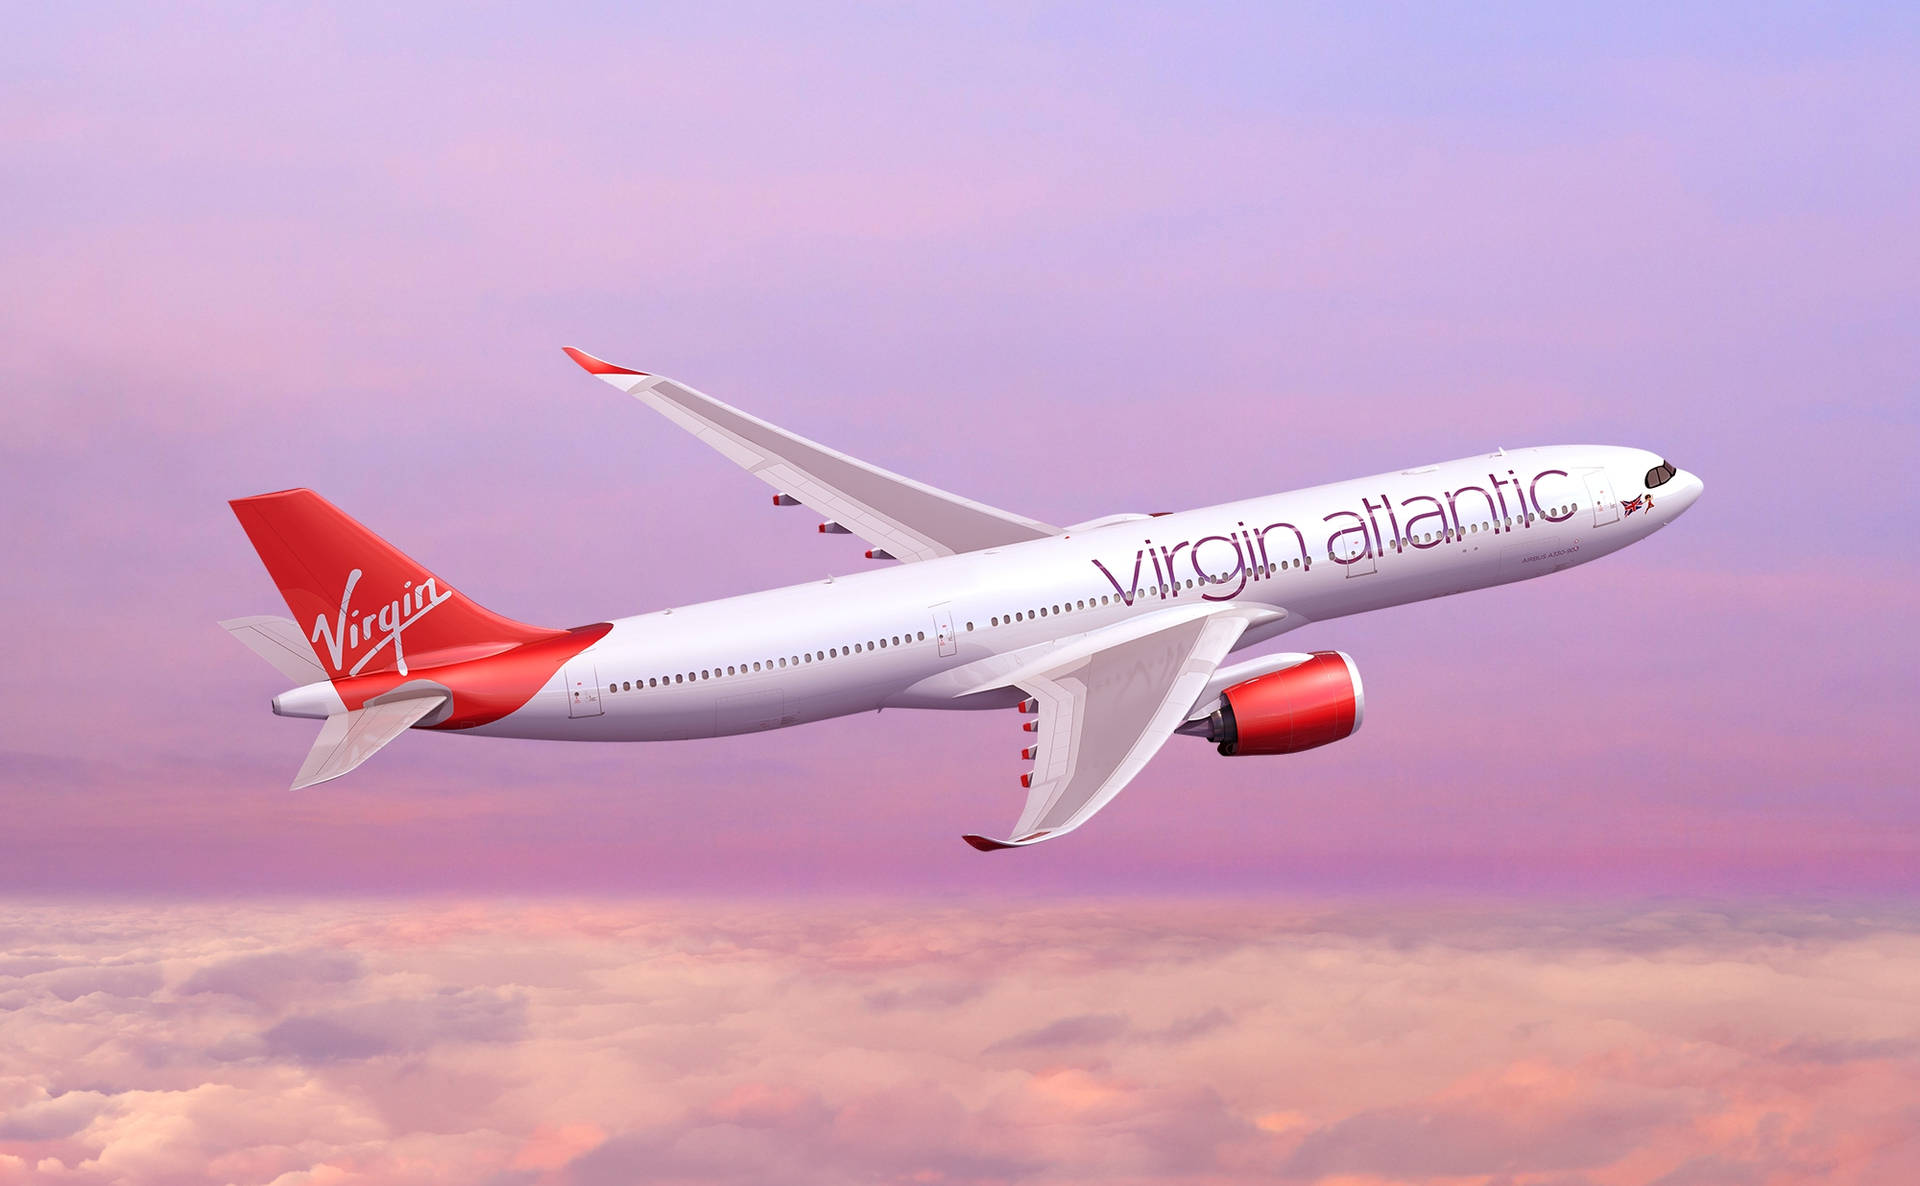 Schwebendesflugzeug Von Virgin Atlantic Wallpaper